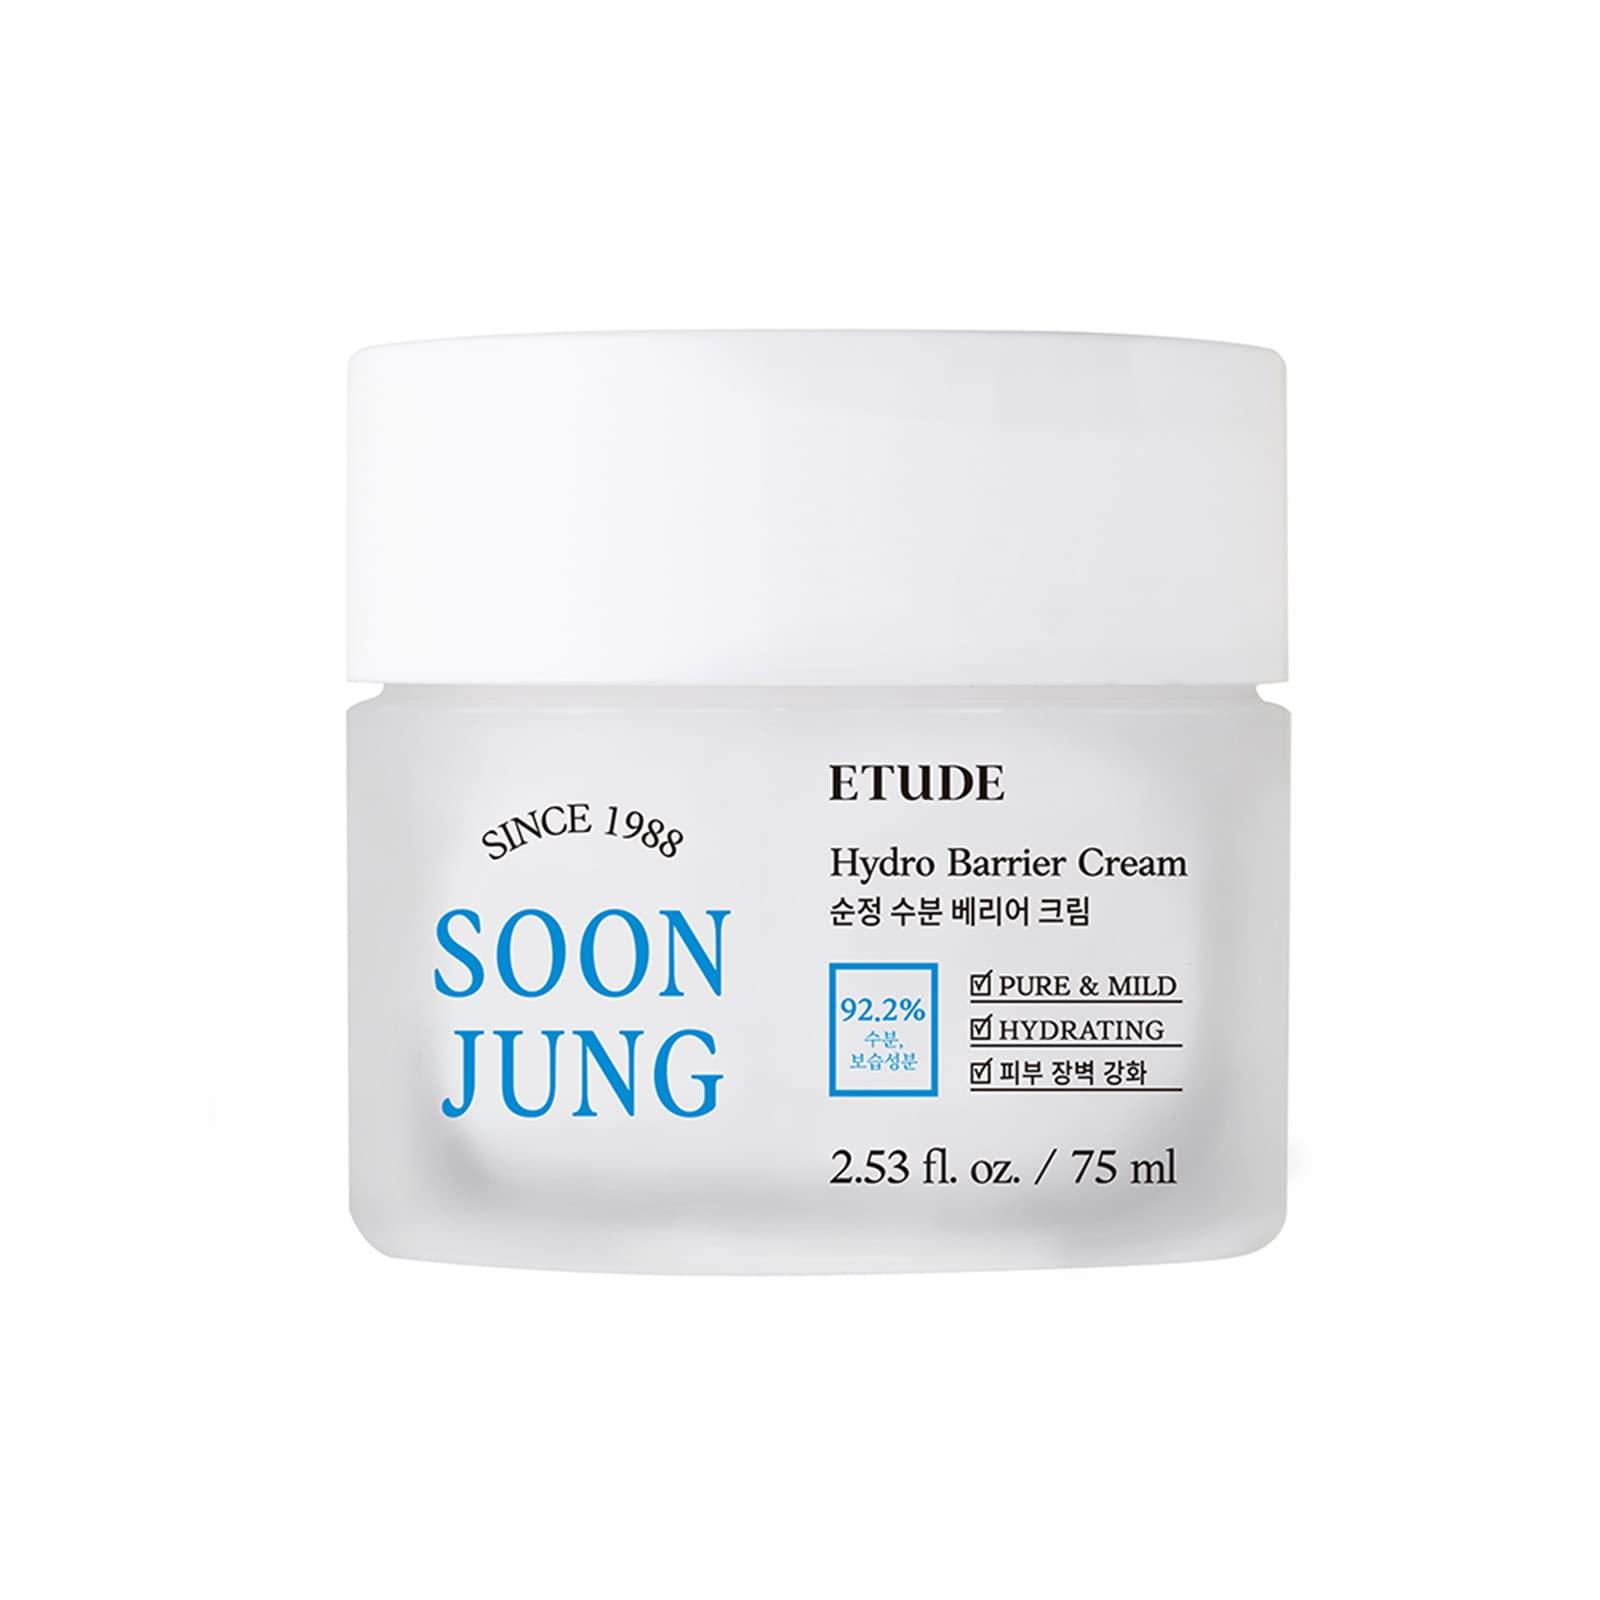 Soon Jung Hydro Barrier Cream - 75 ml - K-Beauty Arabia